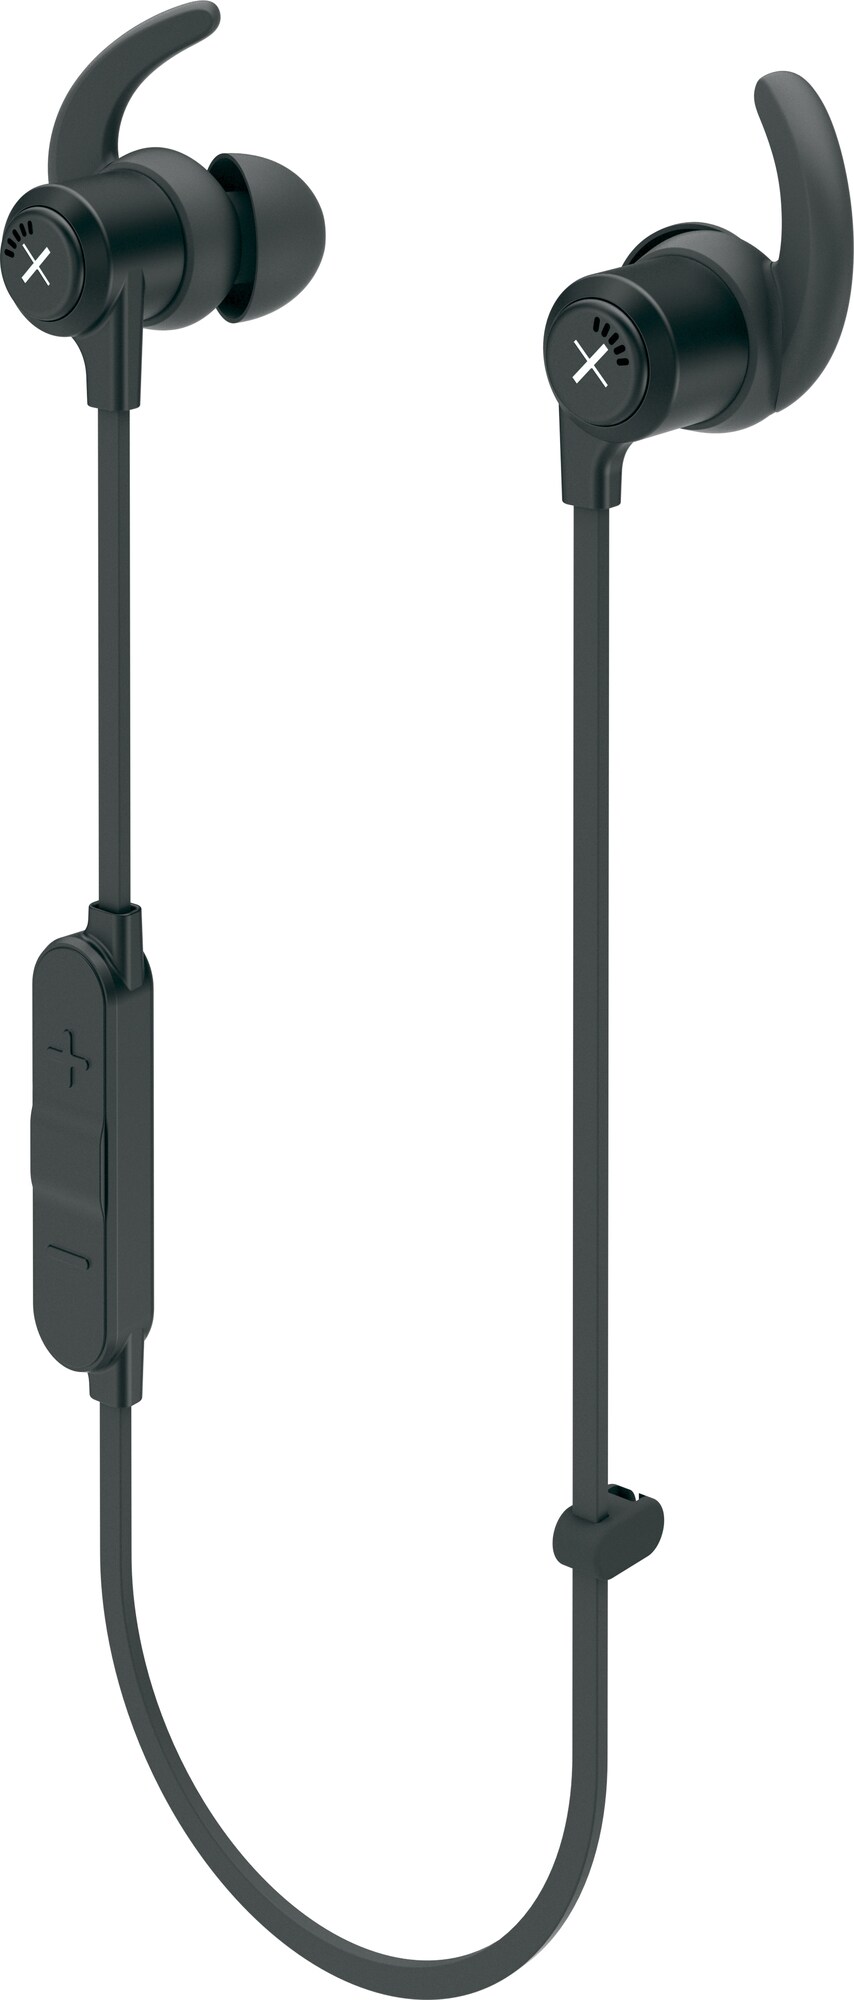 Kygo Life Xelerate trådløse in-ear hodetelefoner (sort) - Hodetelefoner -  Elkjøp